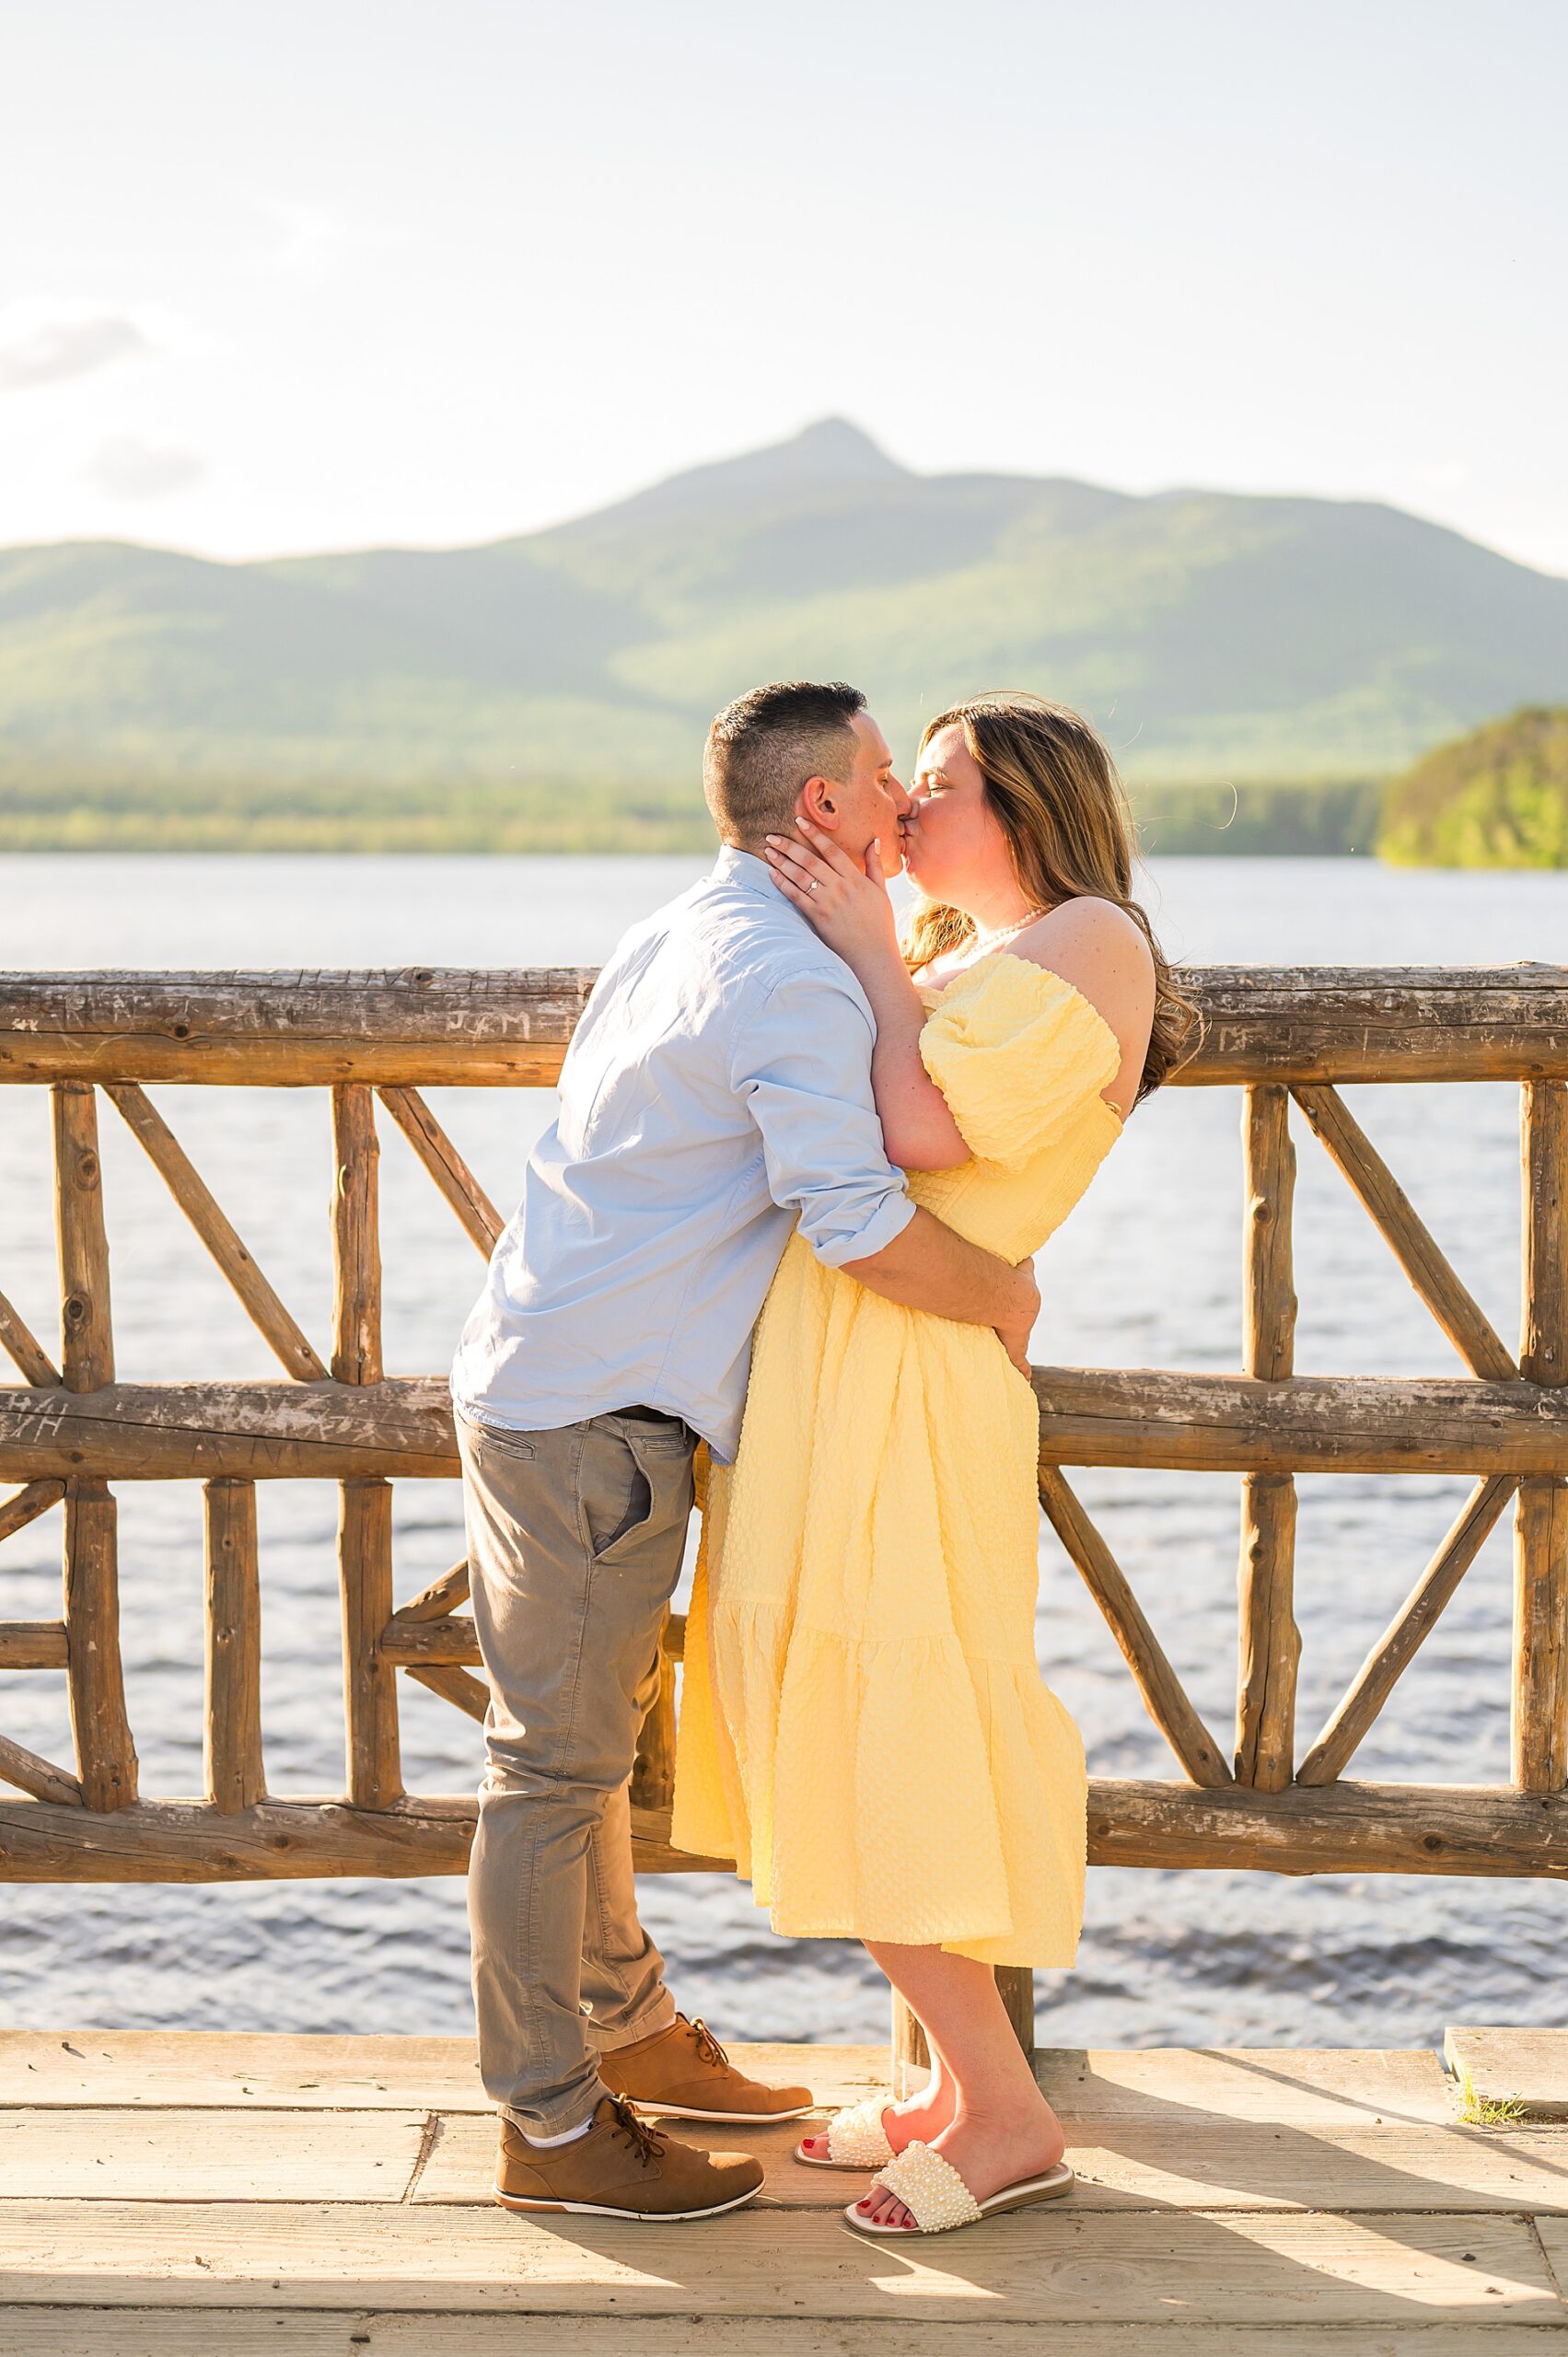 Romantic engagement photographed by New Hampshire Portrait Photographer, Allison Clarke Photography 